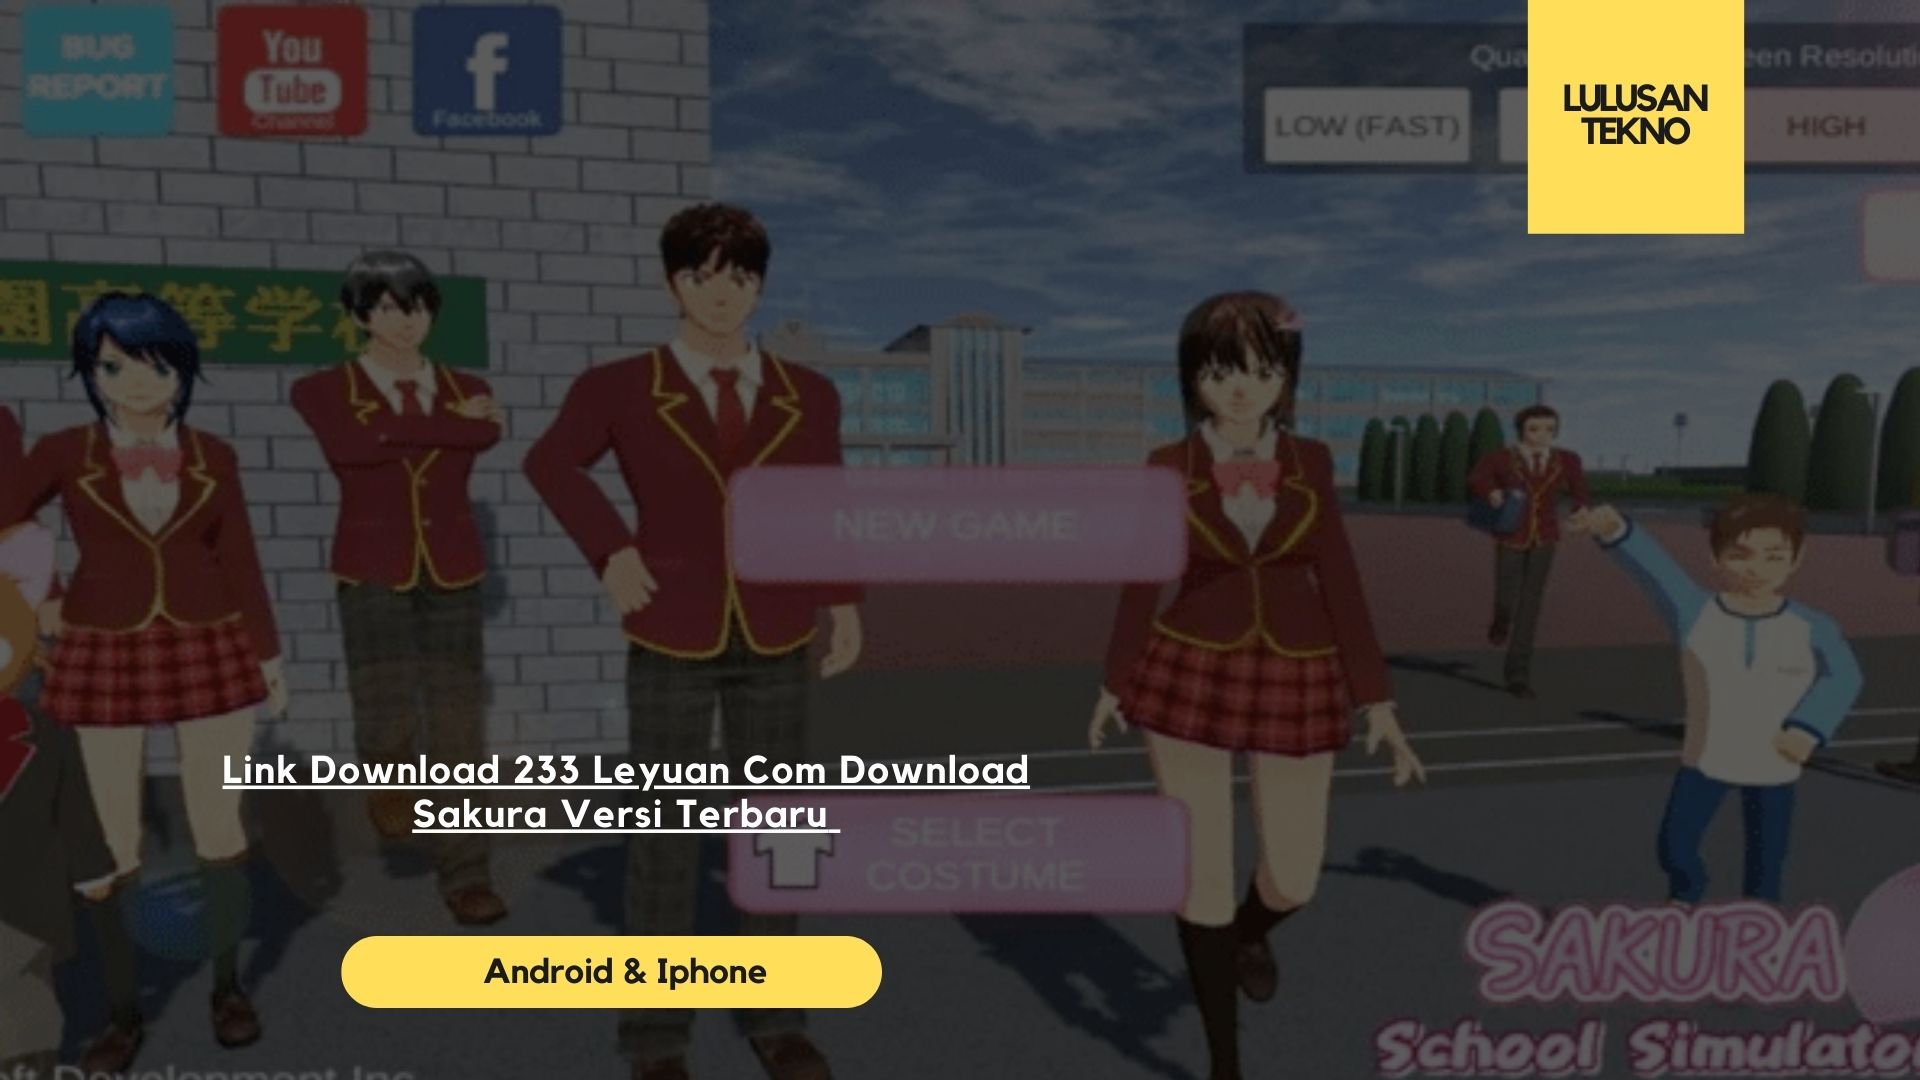 Link Download 233 Leyuan Com Download Sakura Versi Terbaru